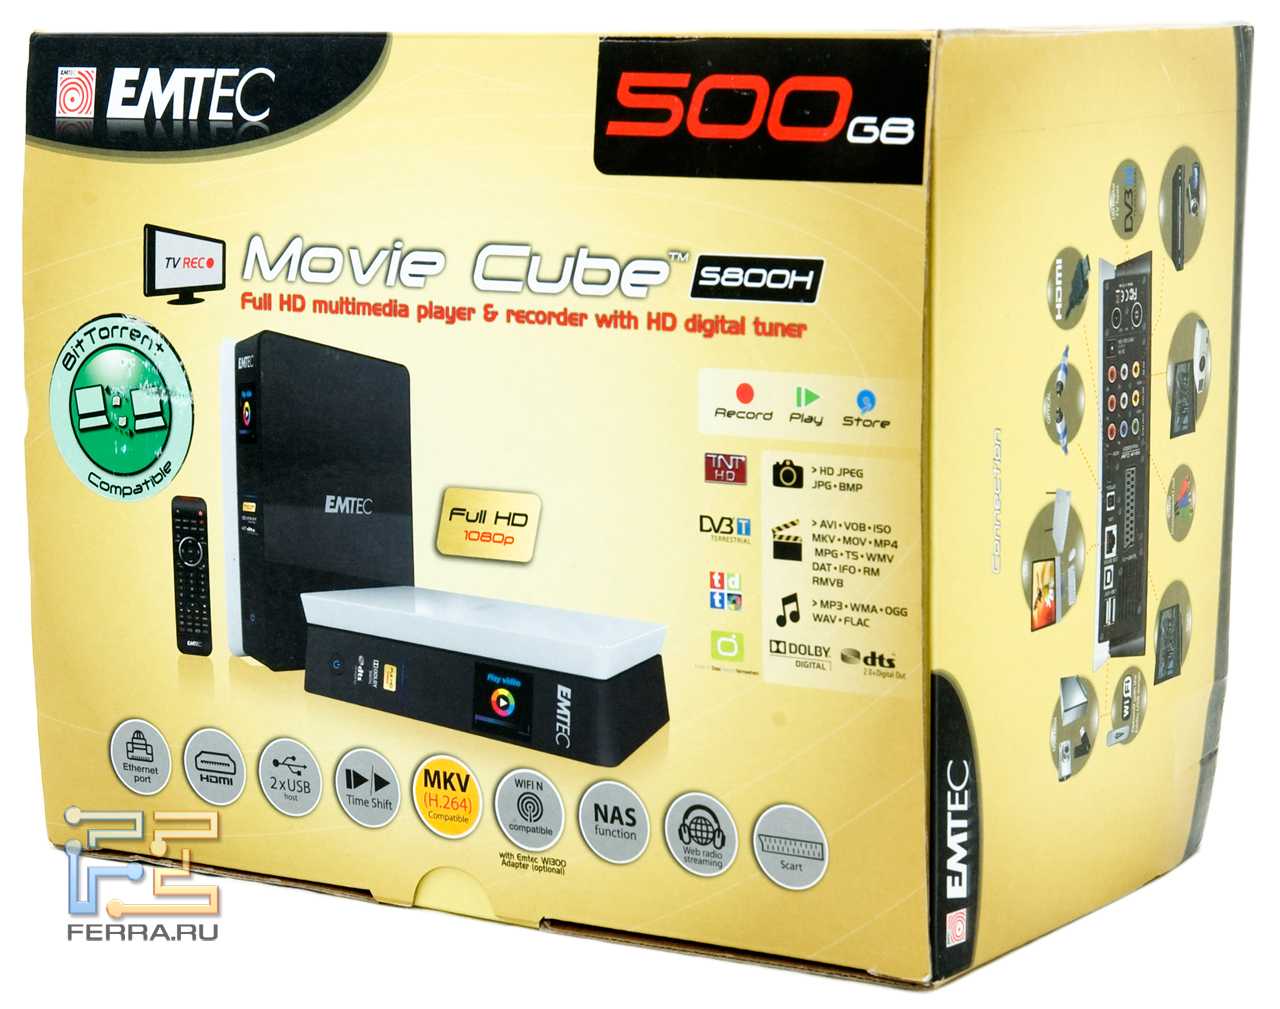 Emtec movie cube s850h 1000gb купить - санкт-петербург по акционной цене , отзывы и обзоры.